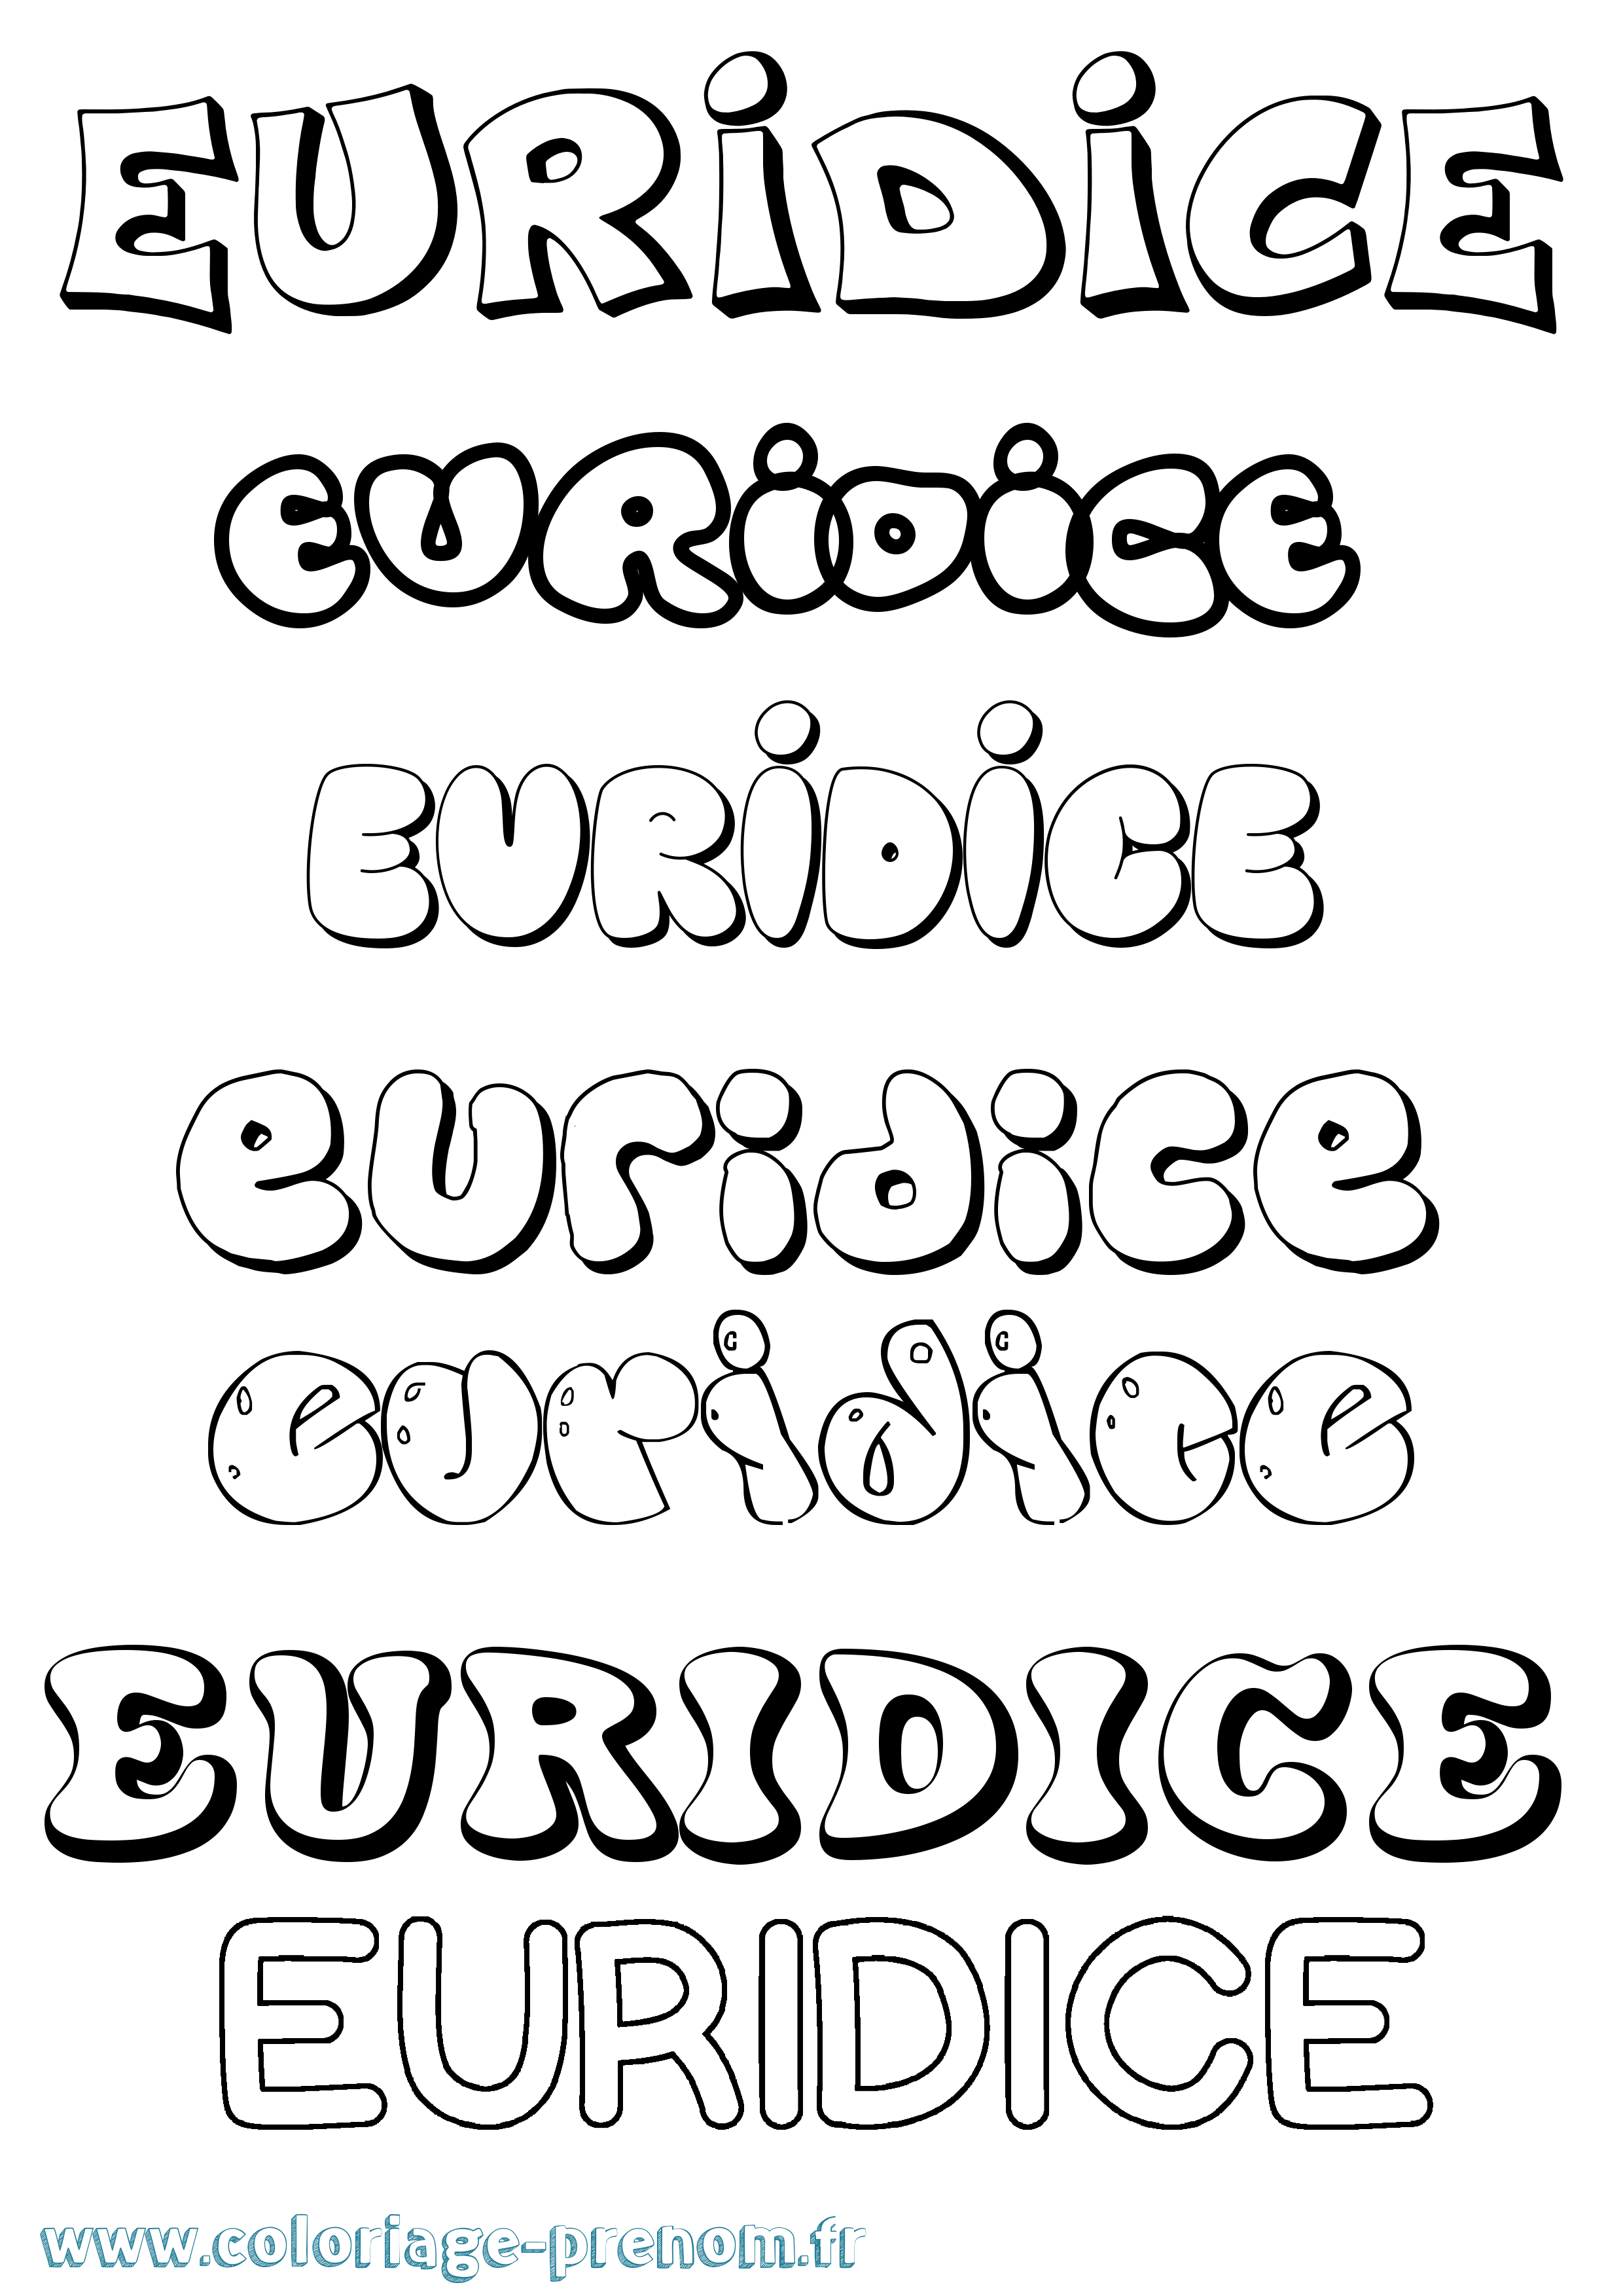 Coloriage prénom Euridice Bubble